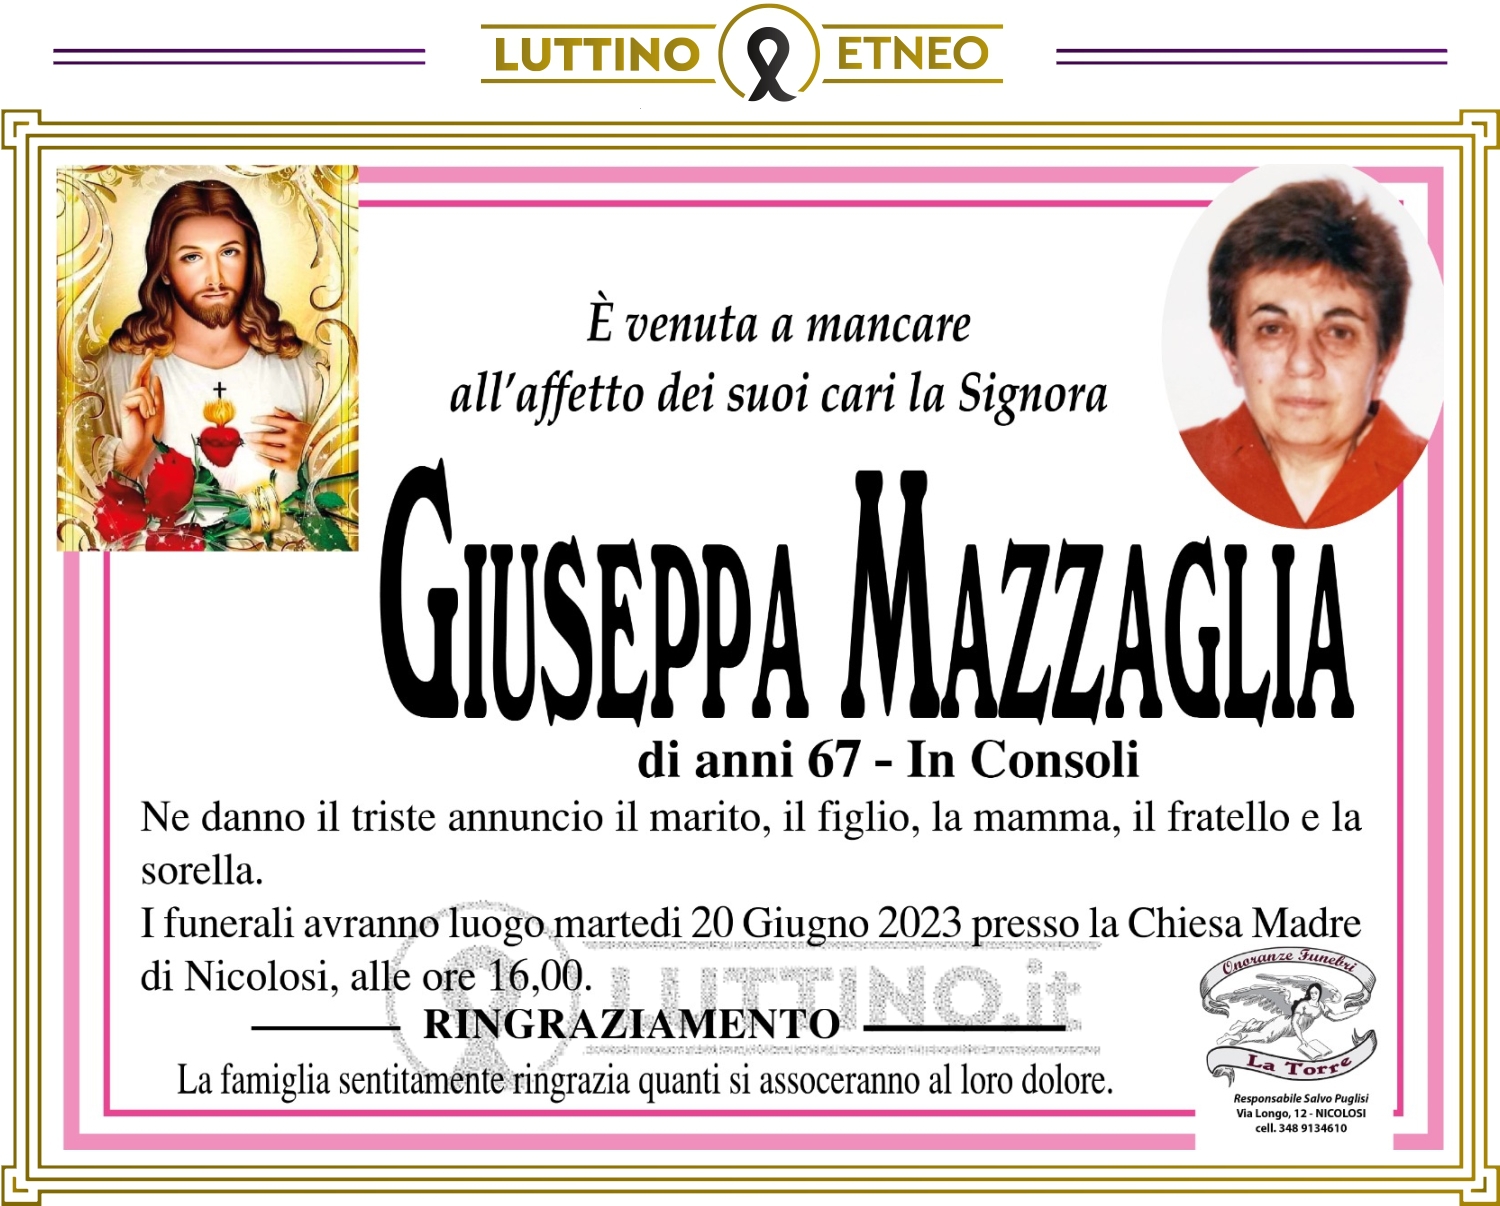 Giuseppa Mazzaglia